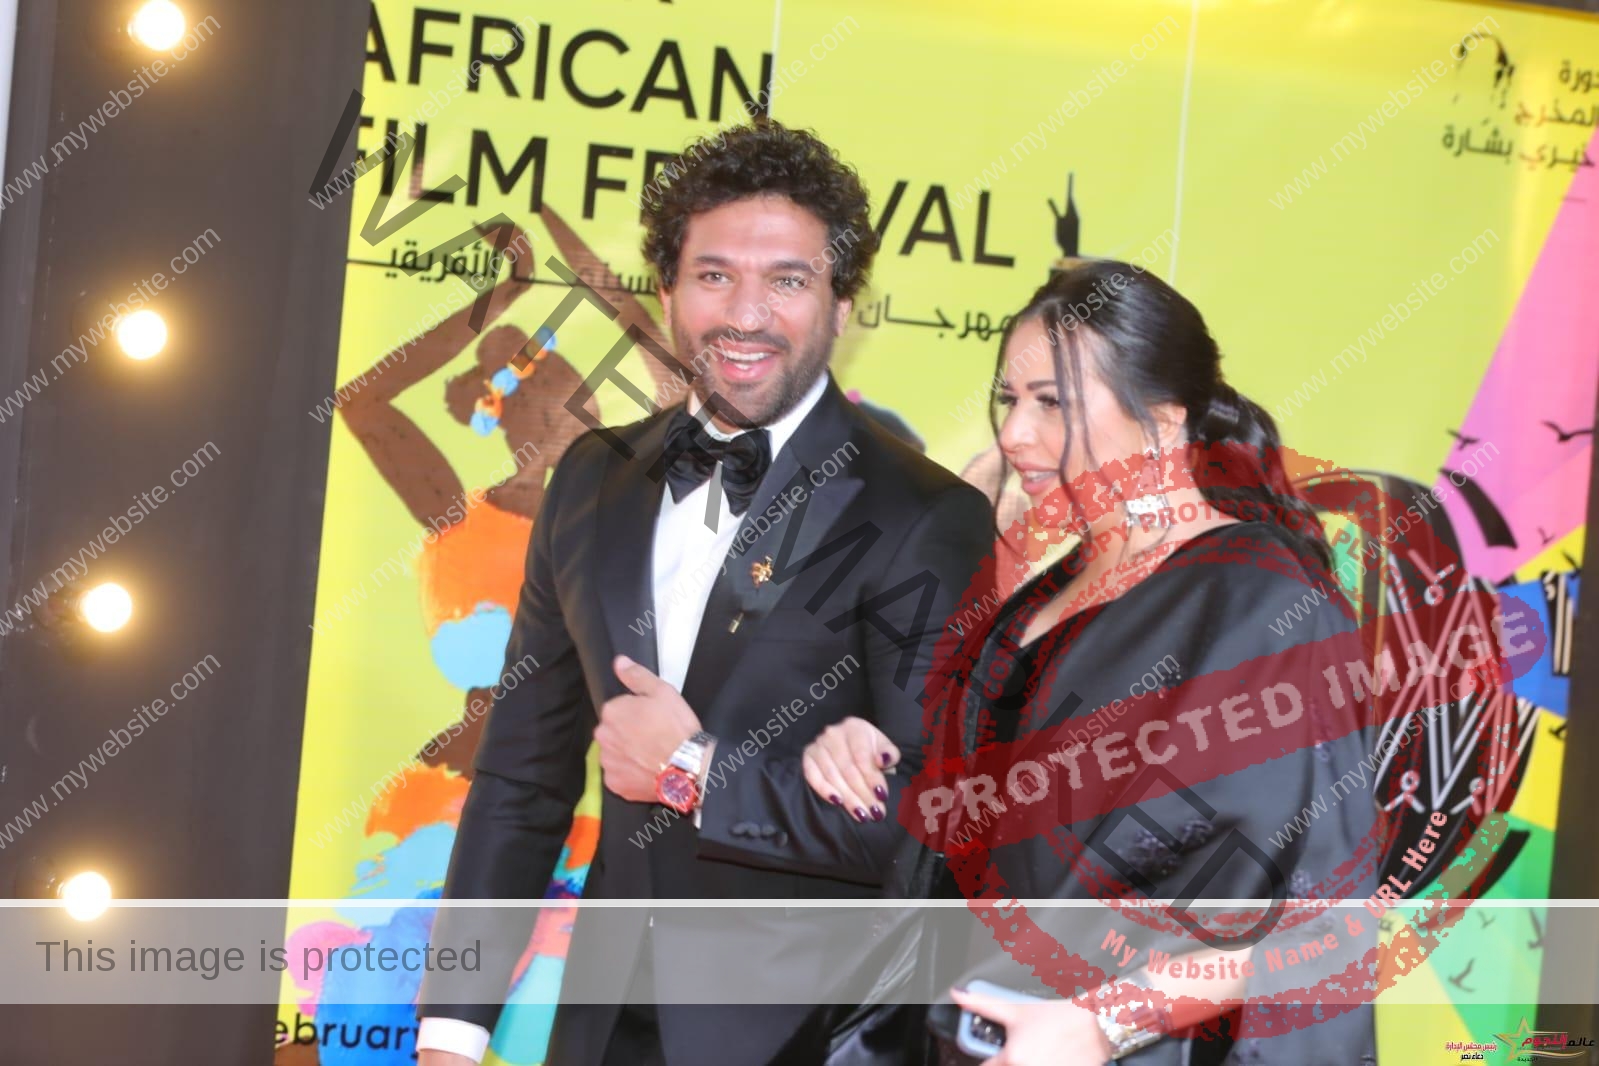 تكريم حسن الرداد وإيمي سمير غانم بـ مهرجان الأقصر للسينما الإفريقية